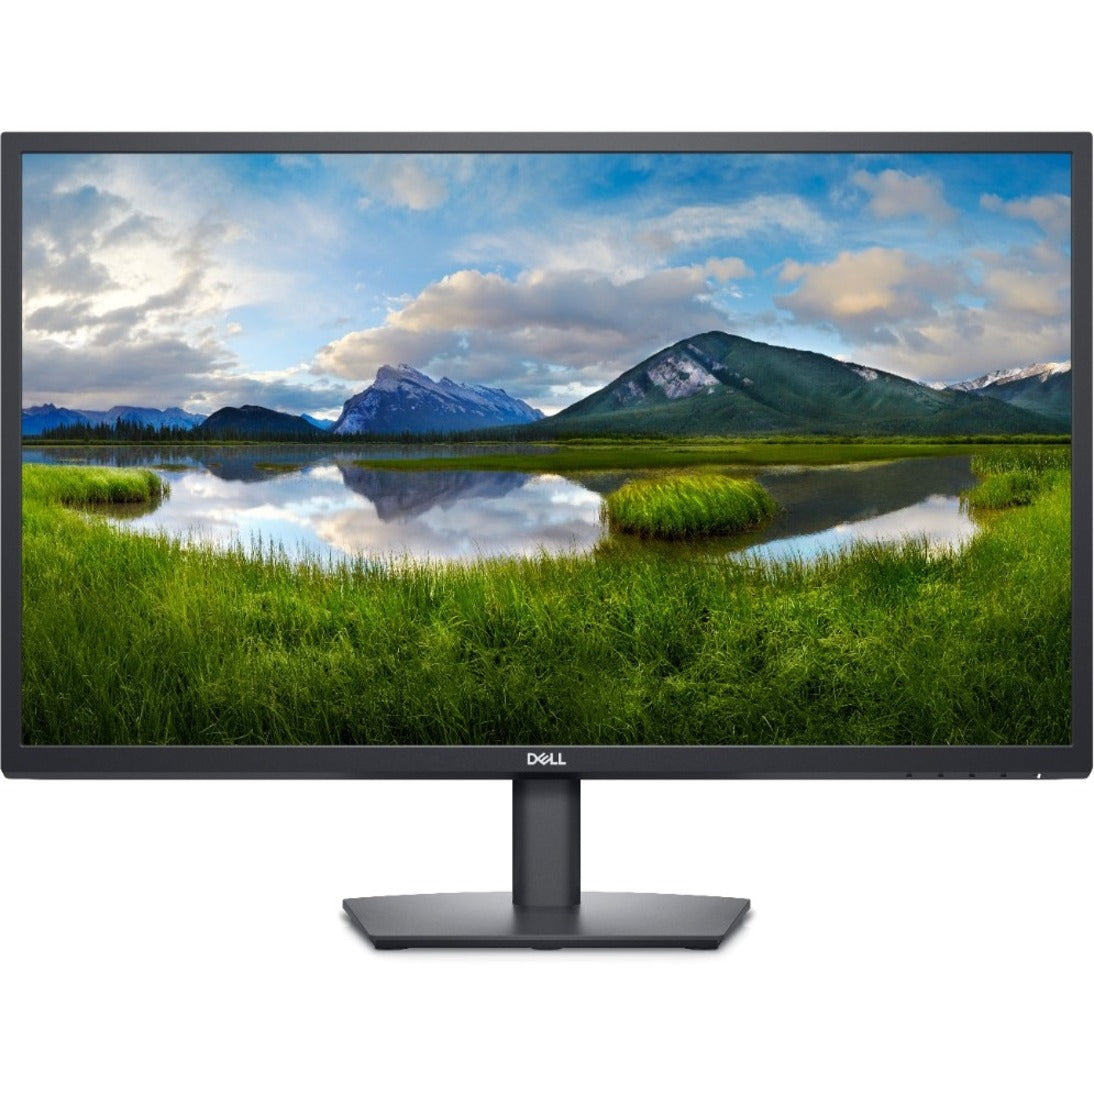 Dell E2422H 23.8" LCD Monitor - 16:9 - Black